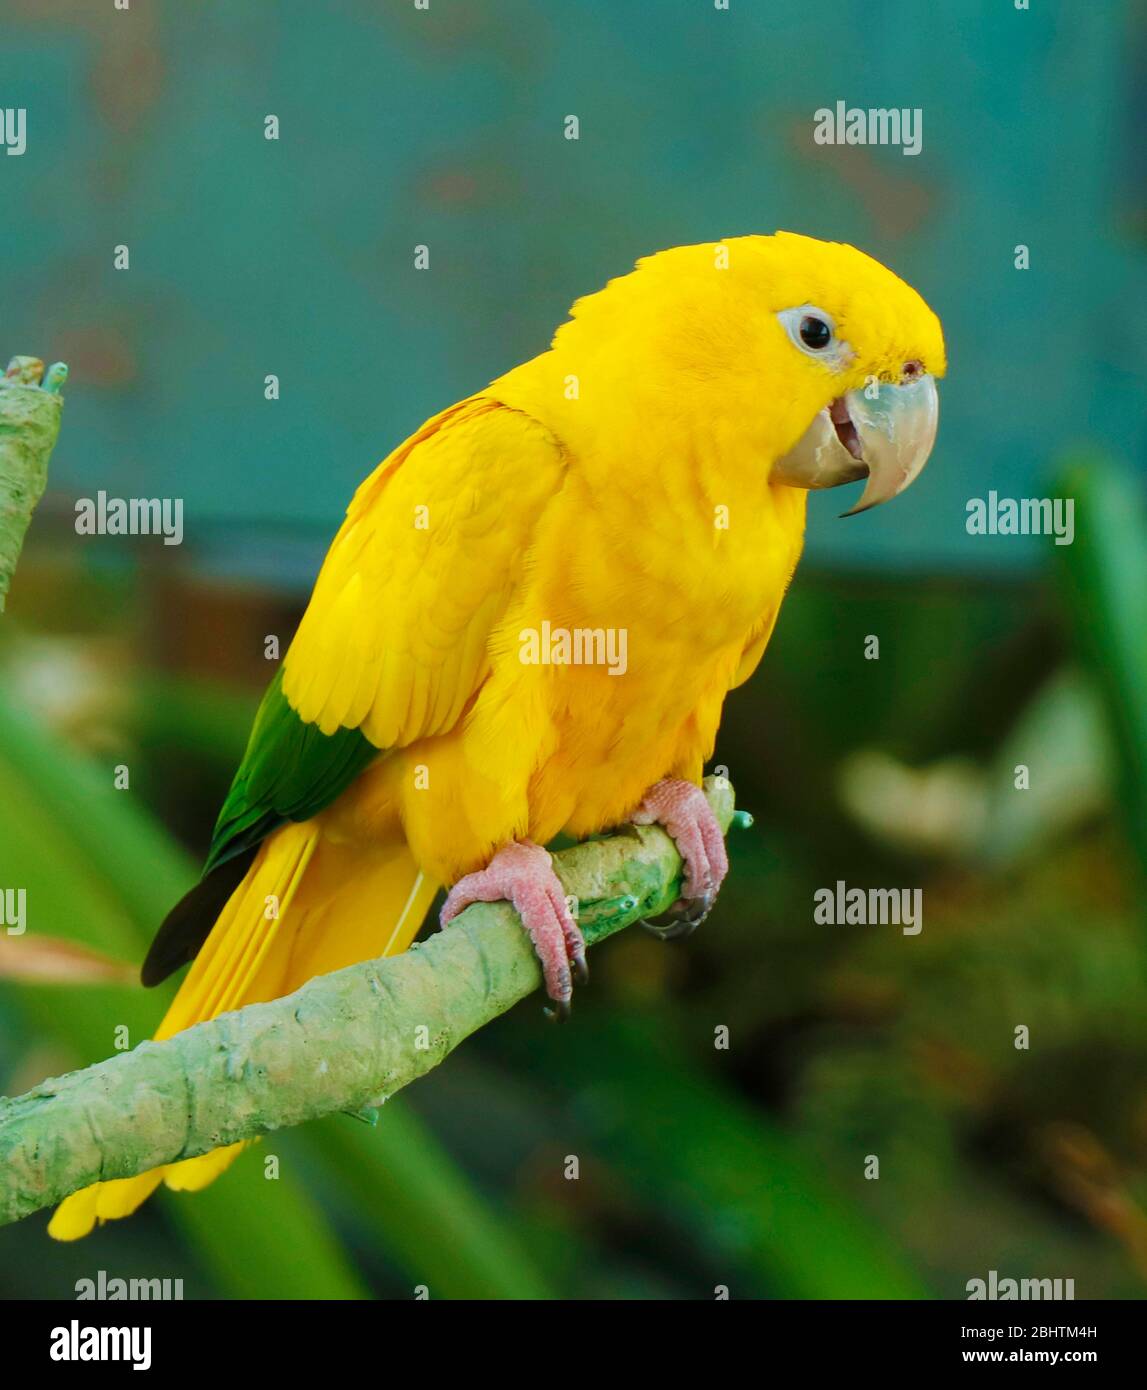 Le parakeet doré est un perroquet néotropical de taille moyenne, son plumage est principalement jaune vif Banque D'Images